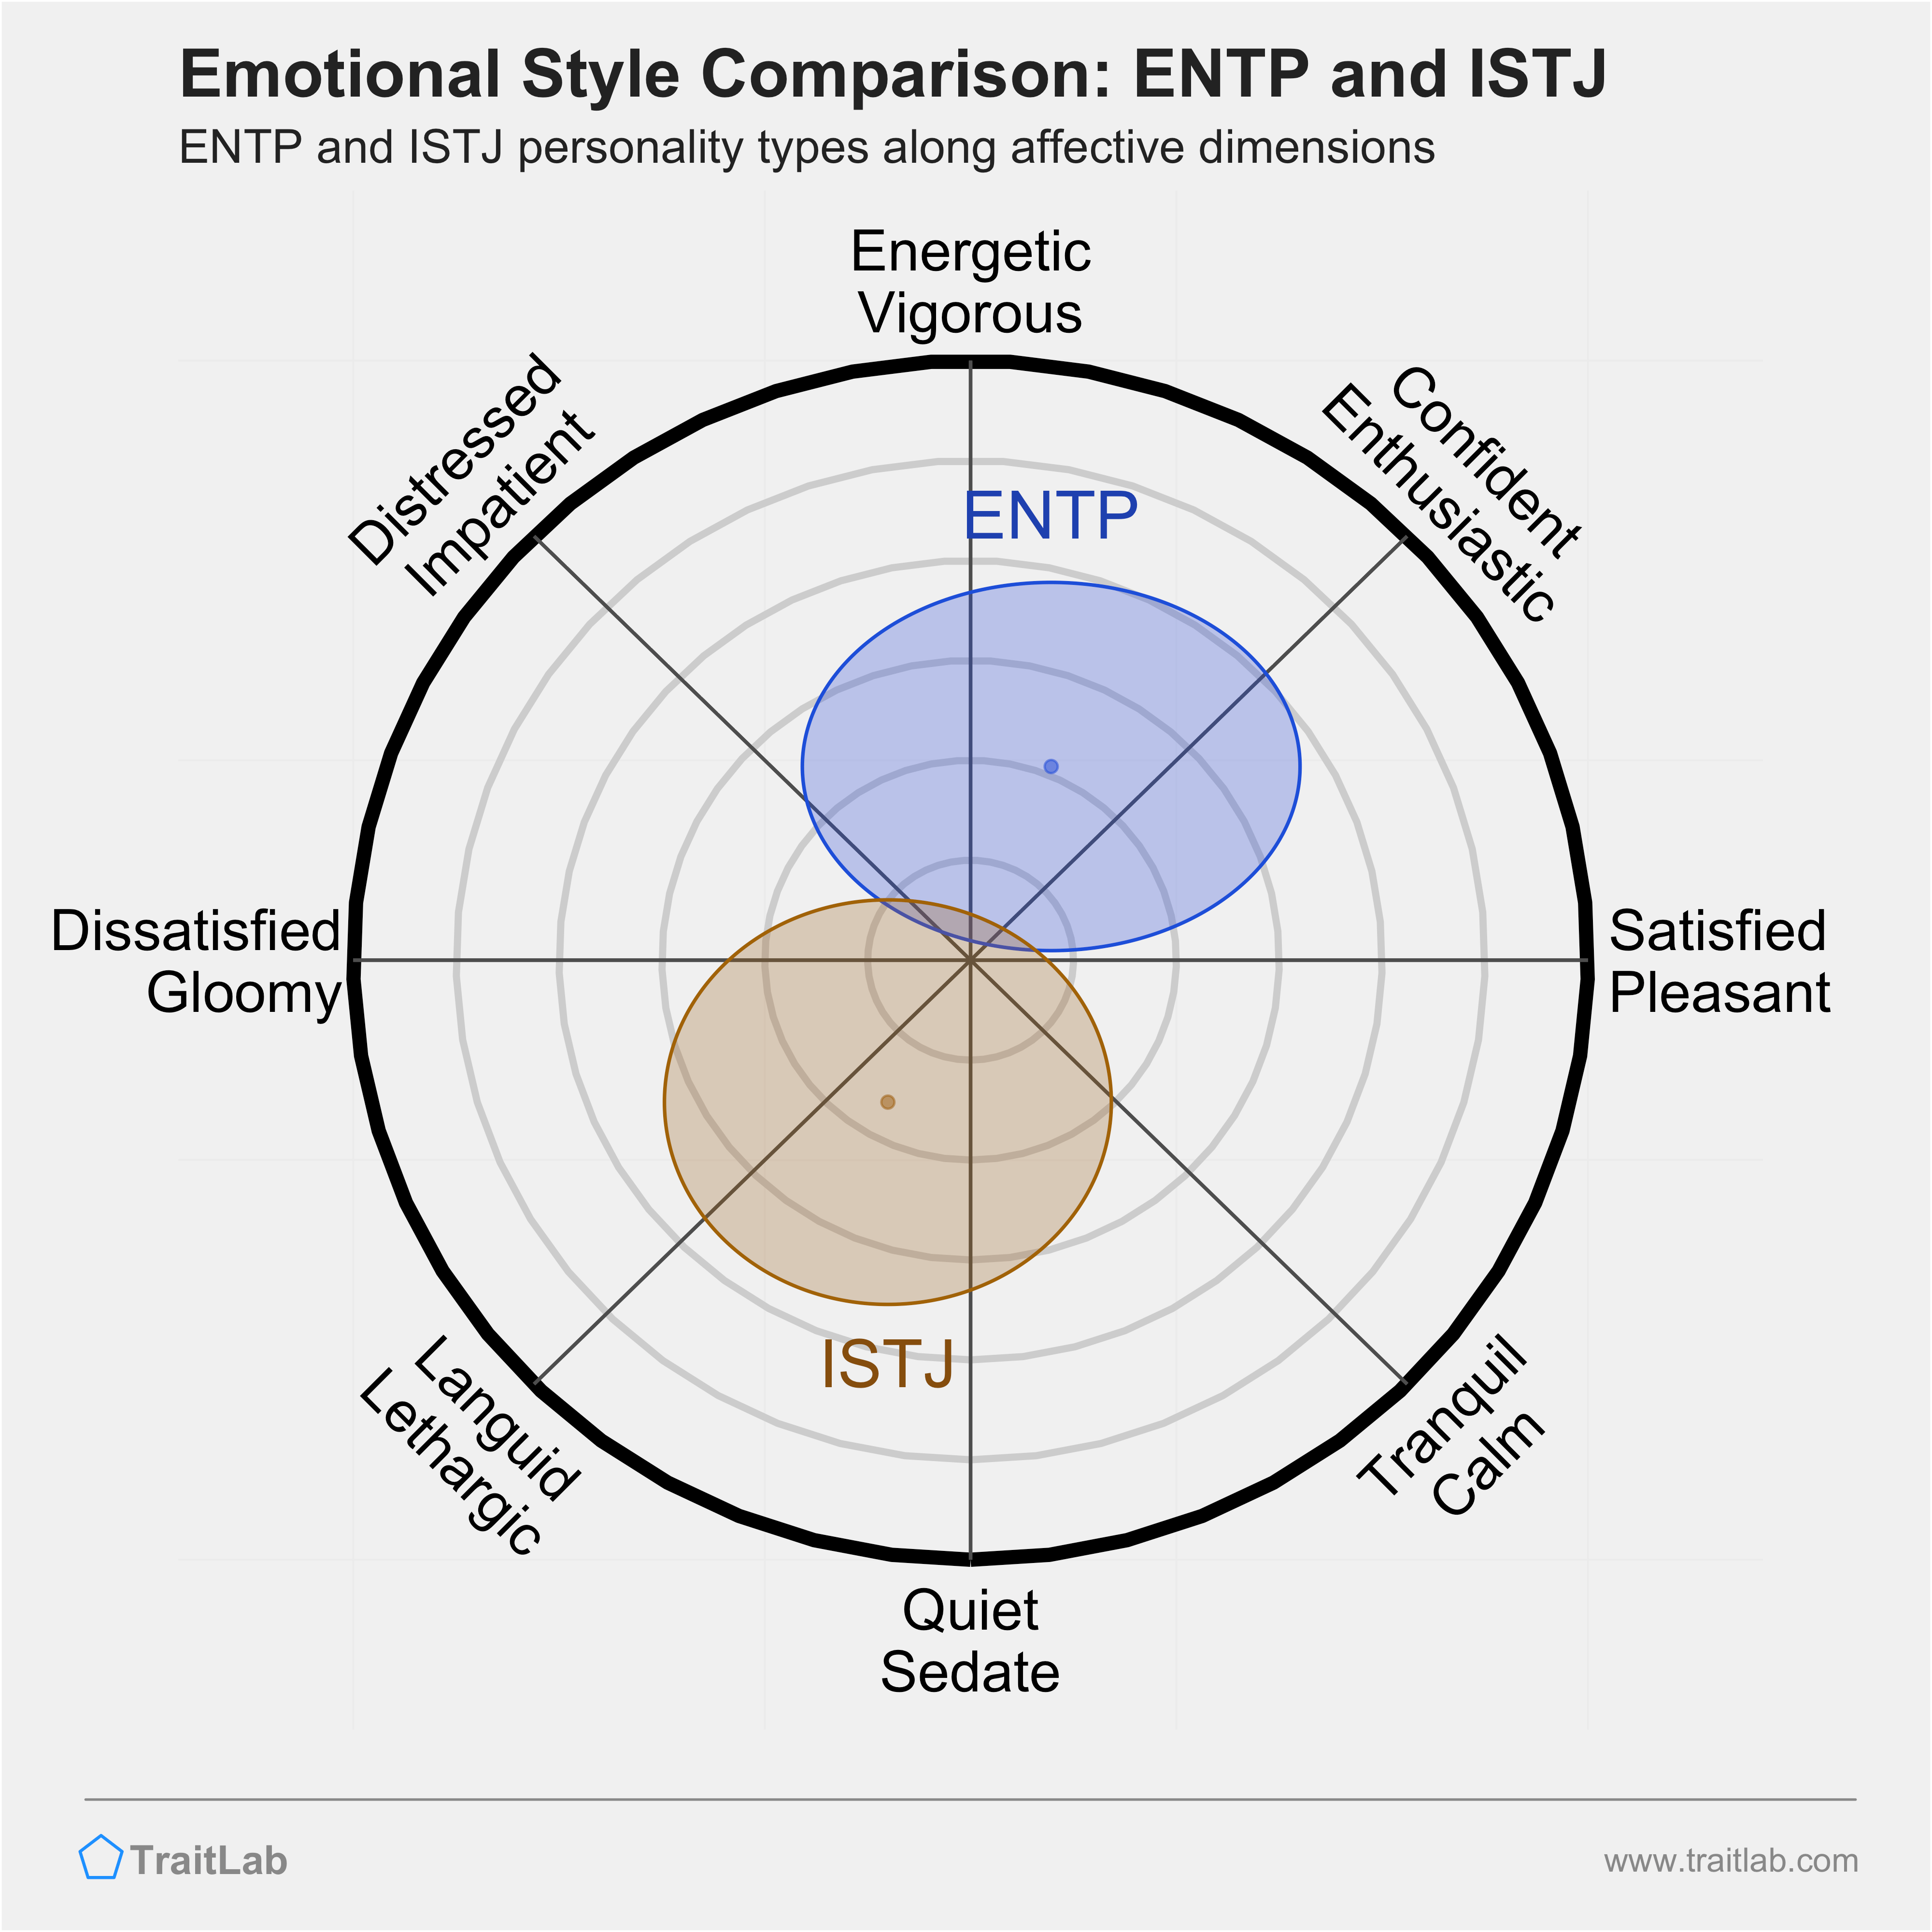 ENTP and ISTJ comparison across emotional (affective) dimensions